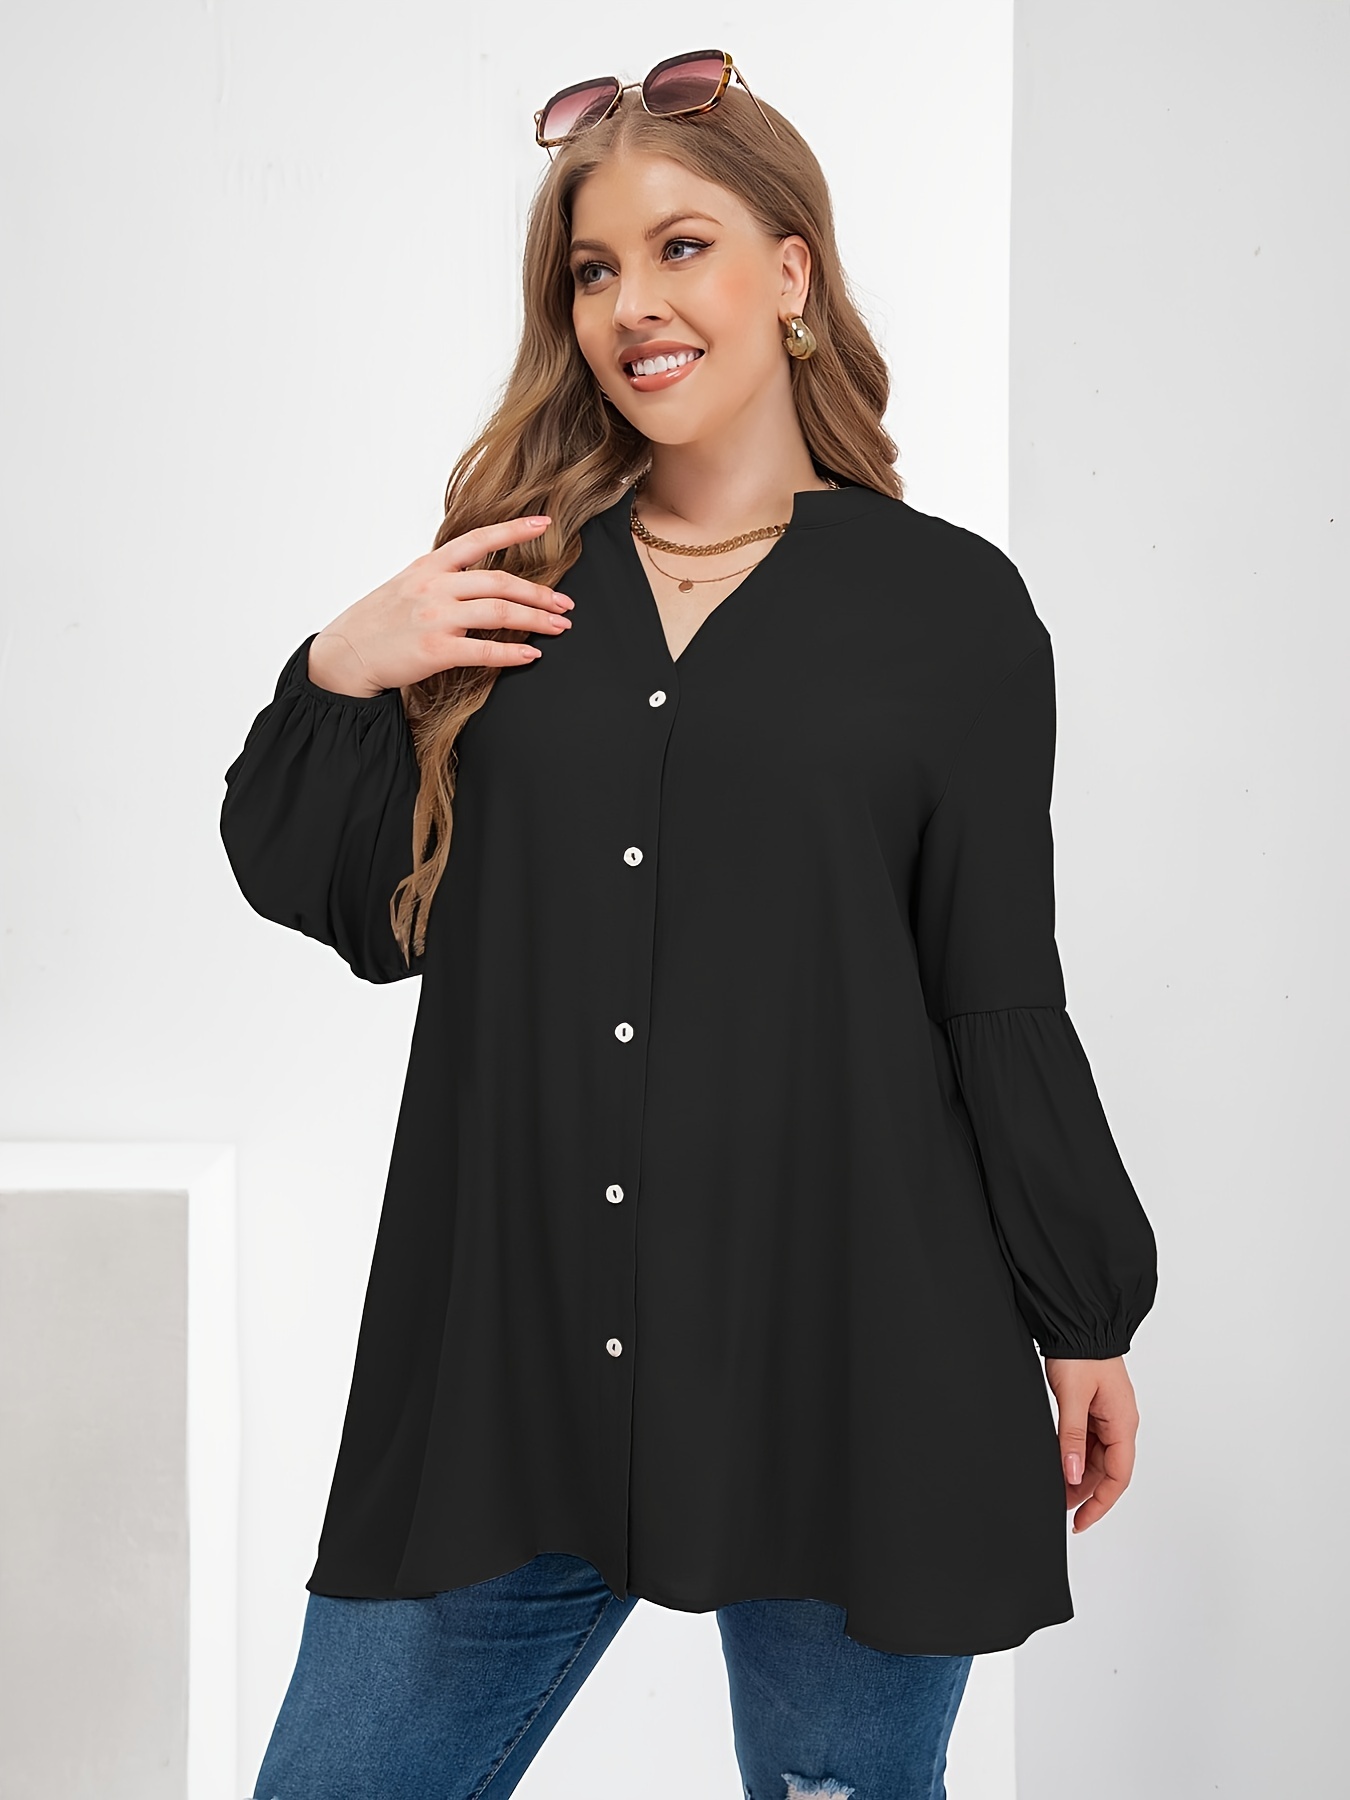 Plus Size Casual Shirt, Women's Plus Plain Long Sleeve Slim Fit Button Up  Tunic Blouse